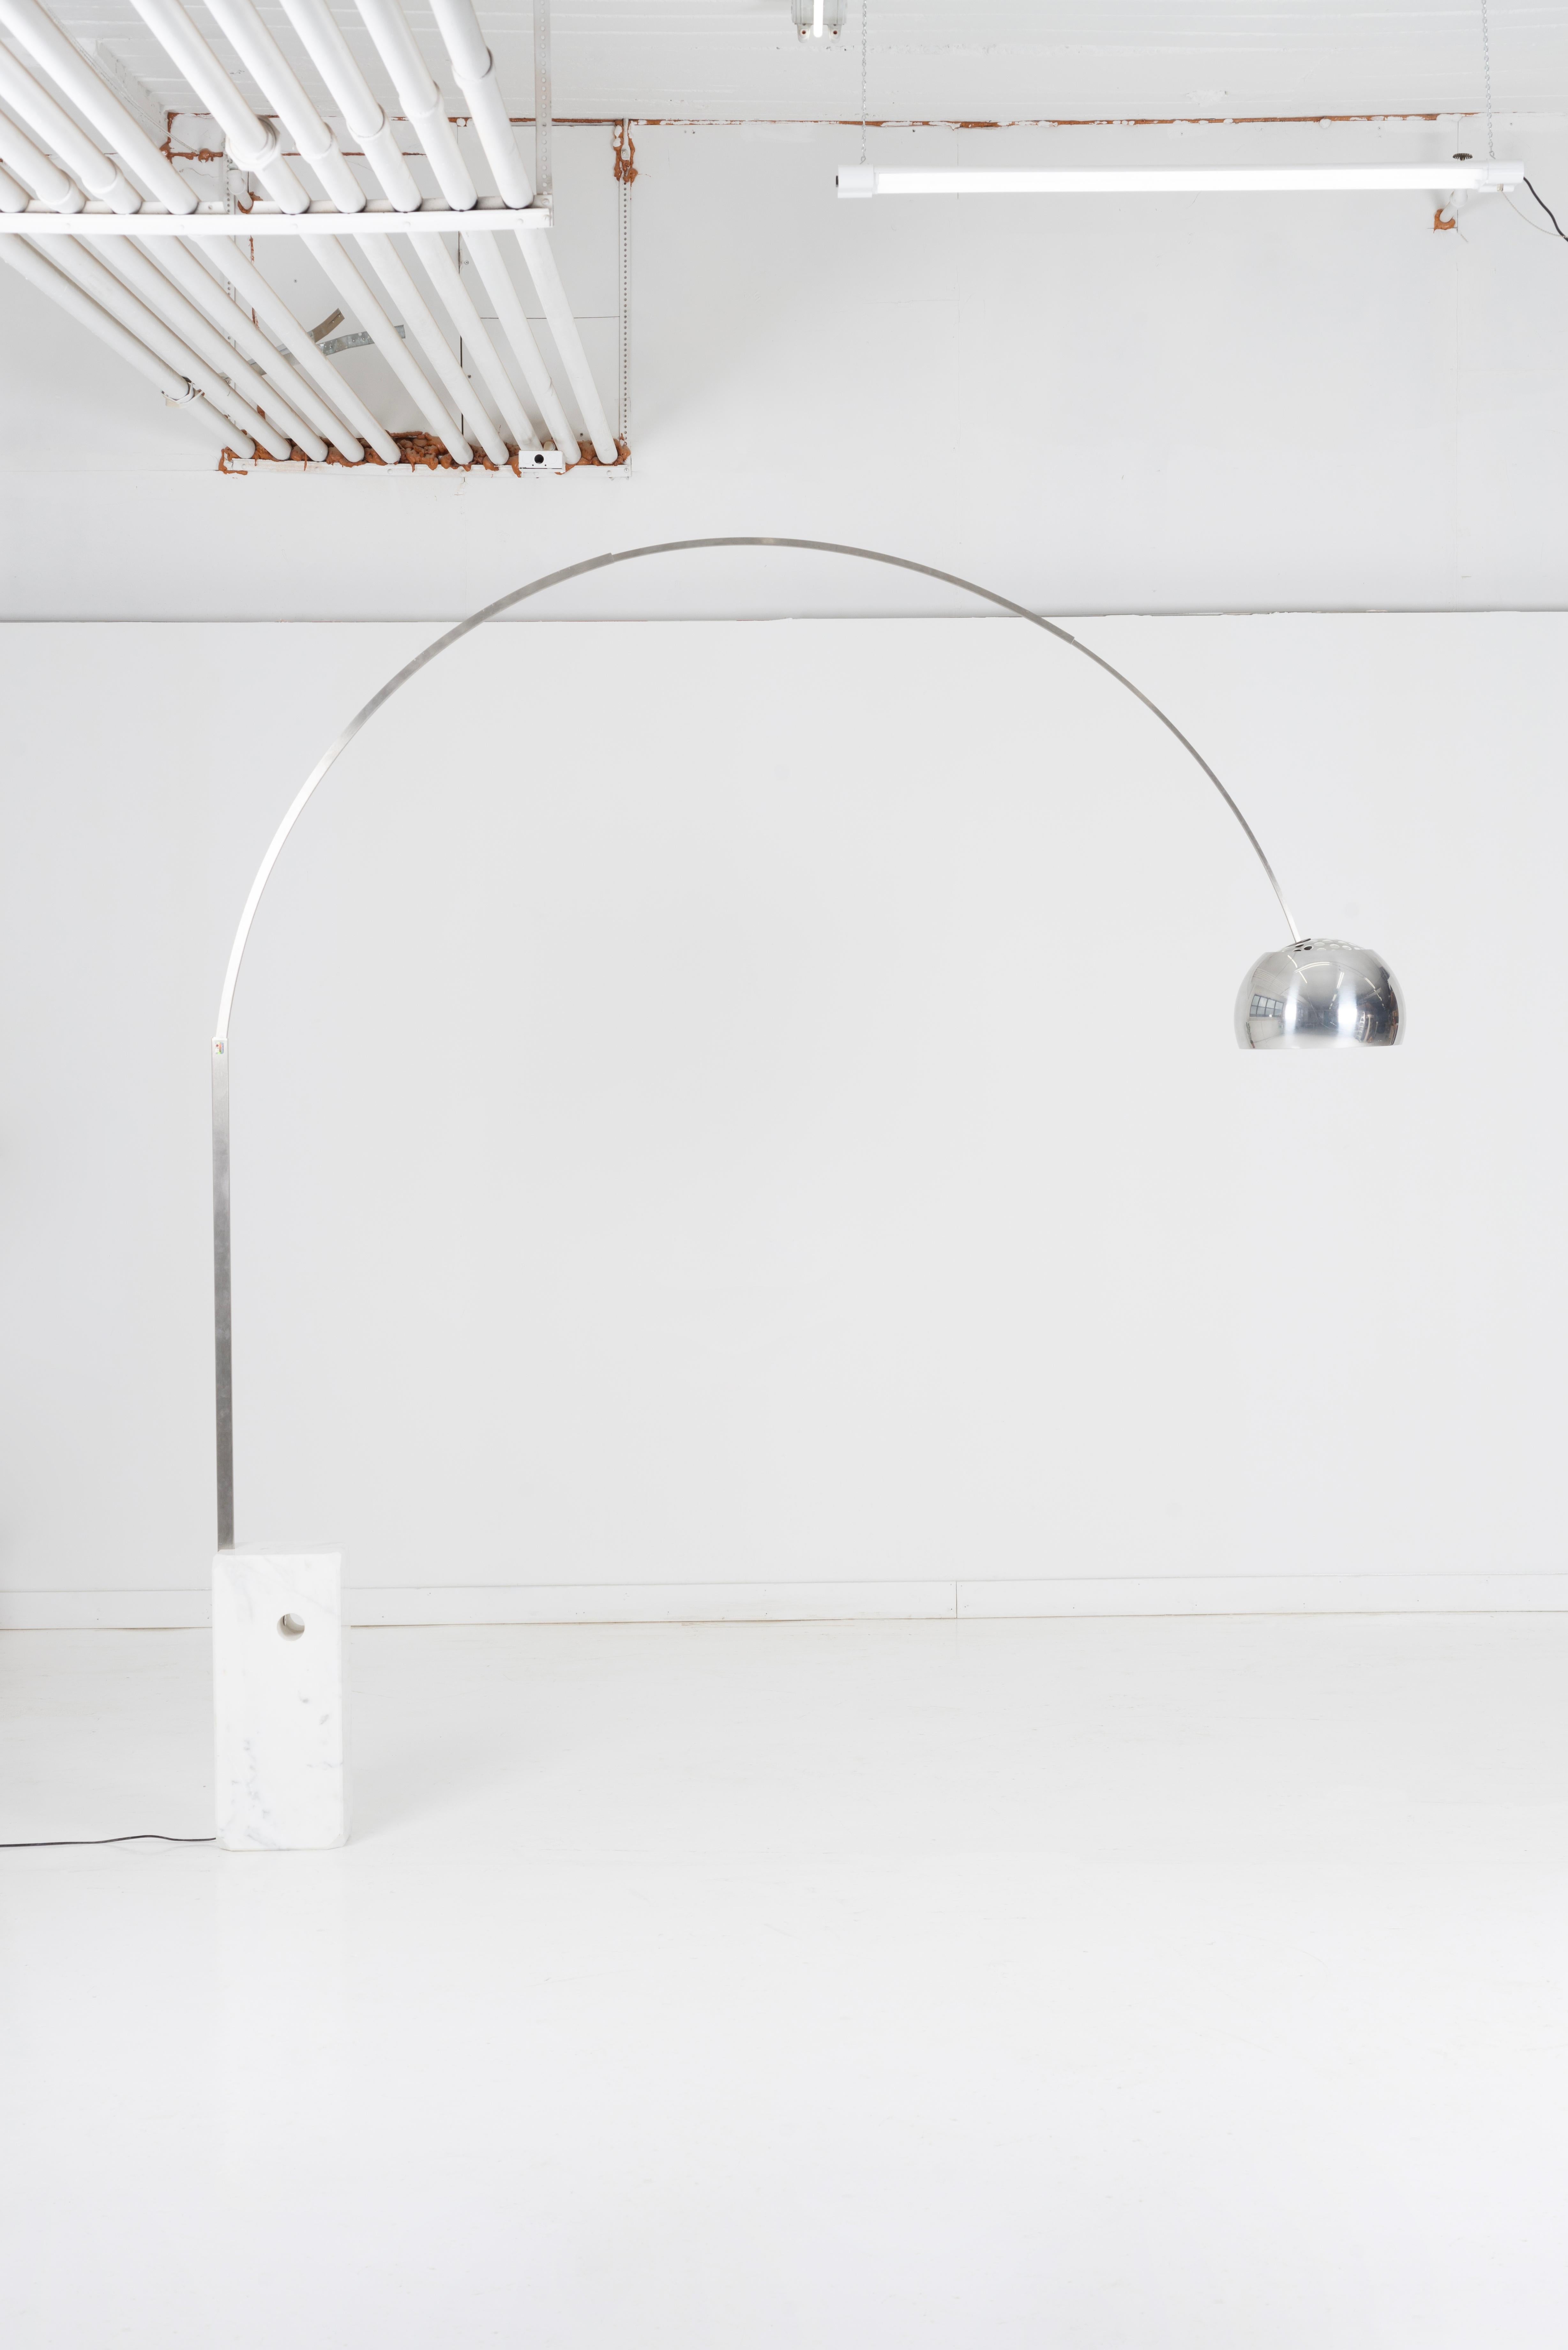 La lampe Arco, pièce emblématique du design moderne du milieu du siècle, a été conçue par les designers italiens Achille et Pier Giacomo Castiglioni en 1962. Ce lampadaire innovant et élégant est doté d'une arche en acier inoxydable courbée et